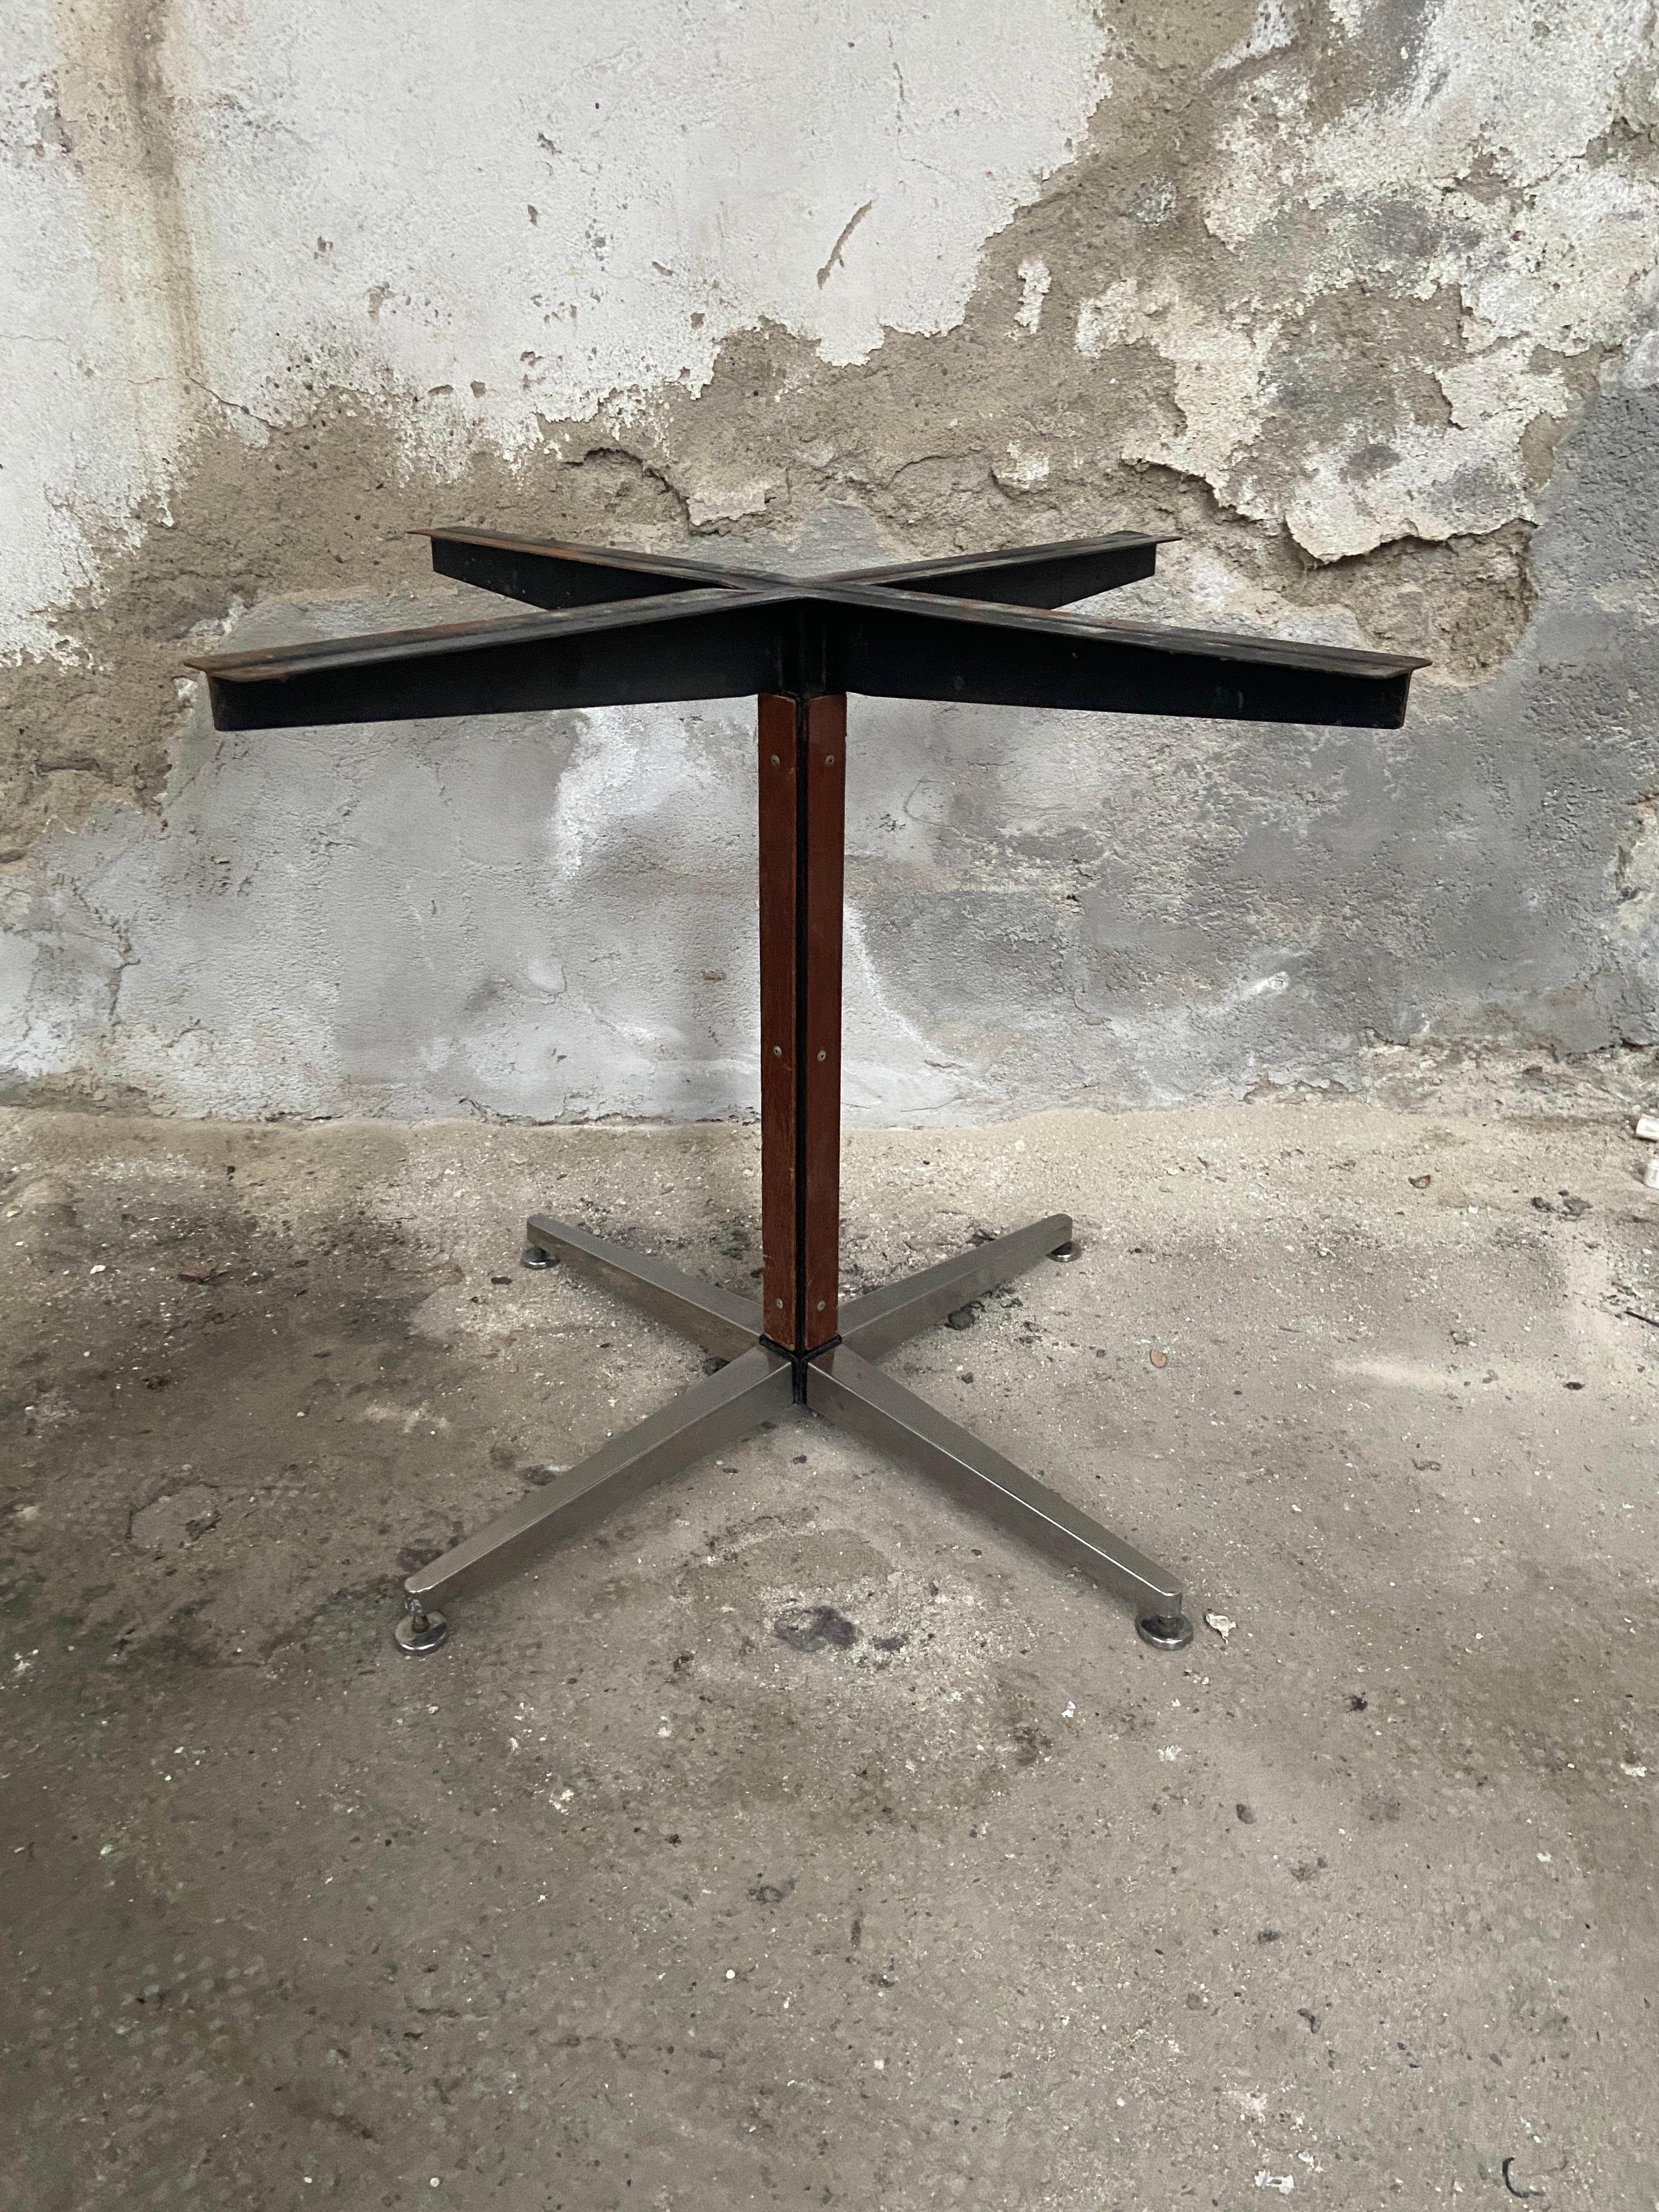 Moderner italienischer Eisentisch aus der Jahrhundertmitte mit Tripode-Aluminiumbeinen und Holzeinlagen. 1970s
weitere Stücke verfügbar